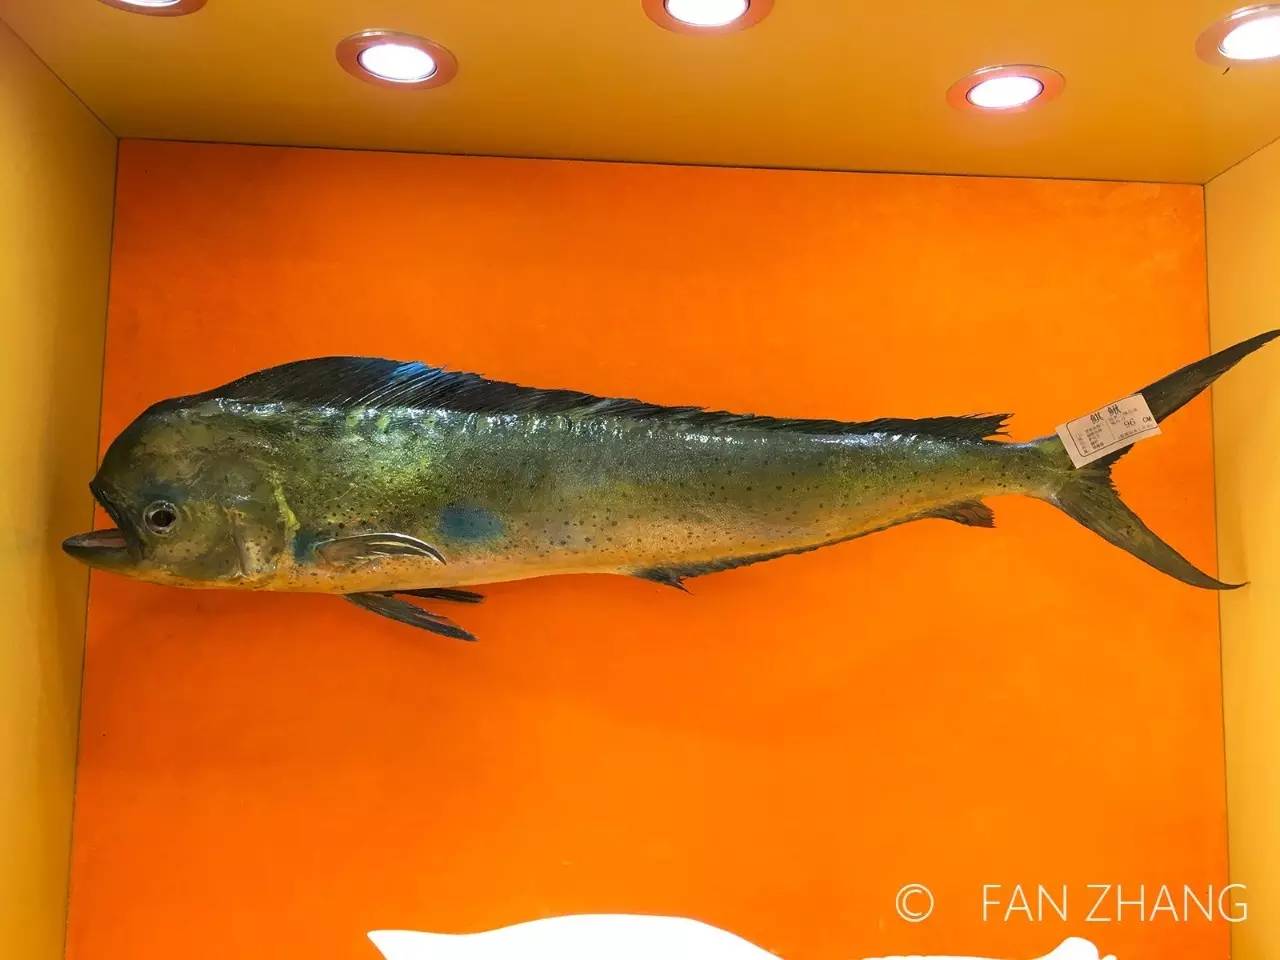 鲯鳅,又名鬼头刀,有名的远洋鱼类.